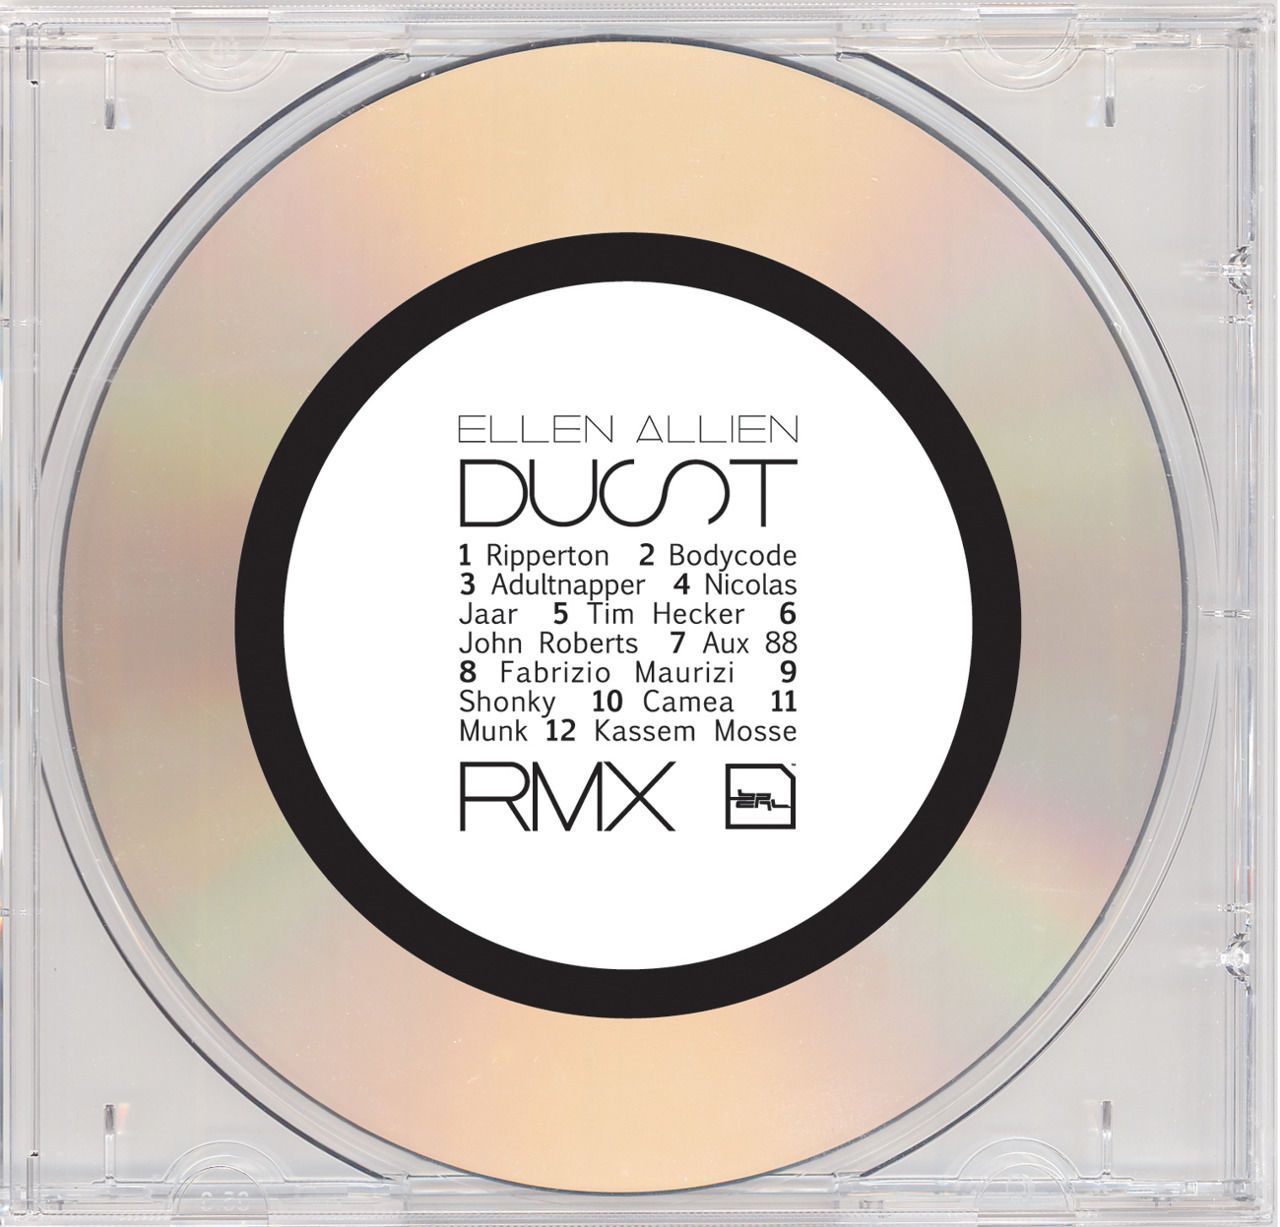 DUST - REMIX ALBUM